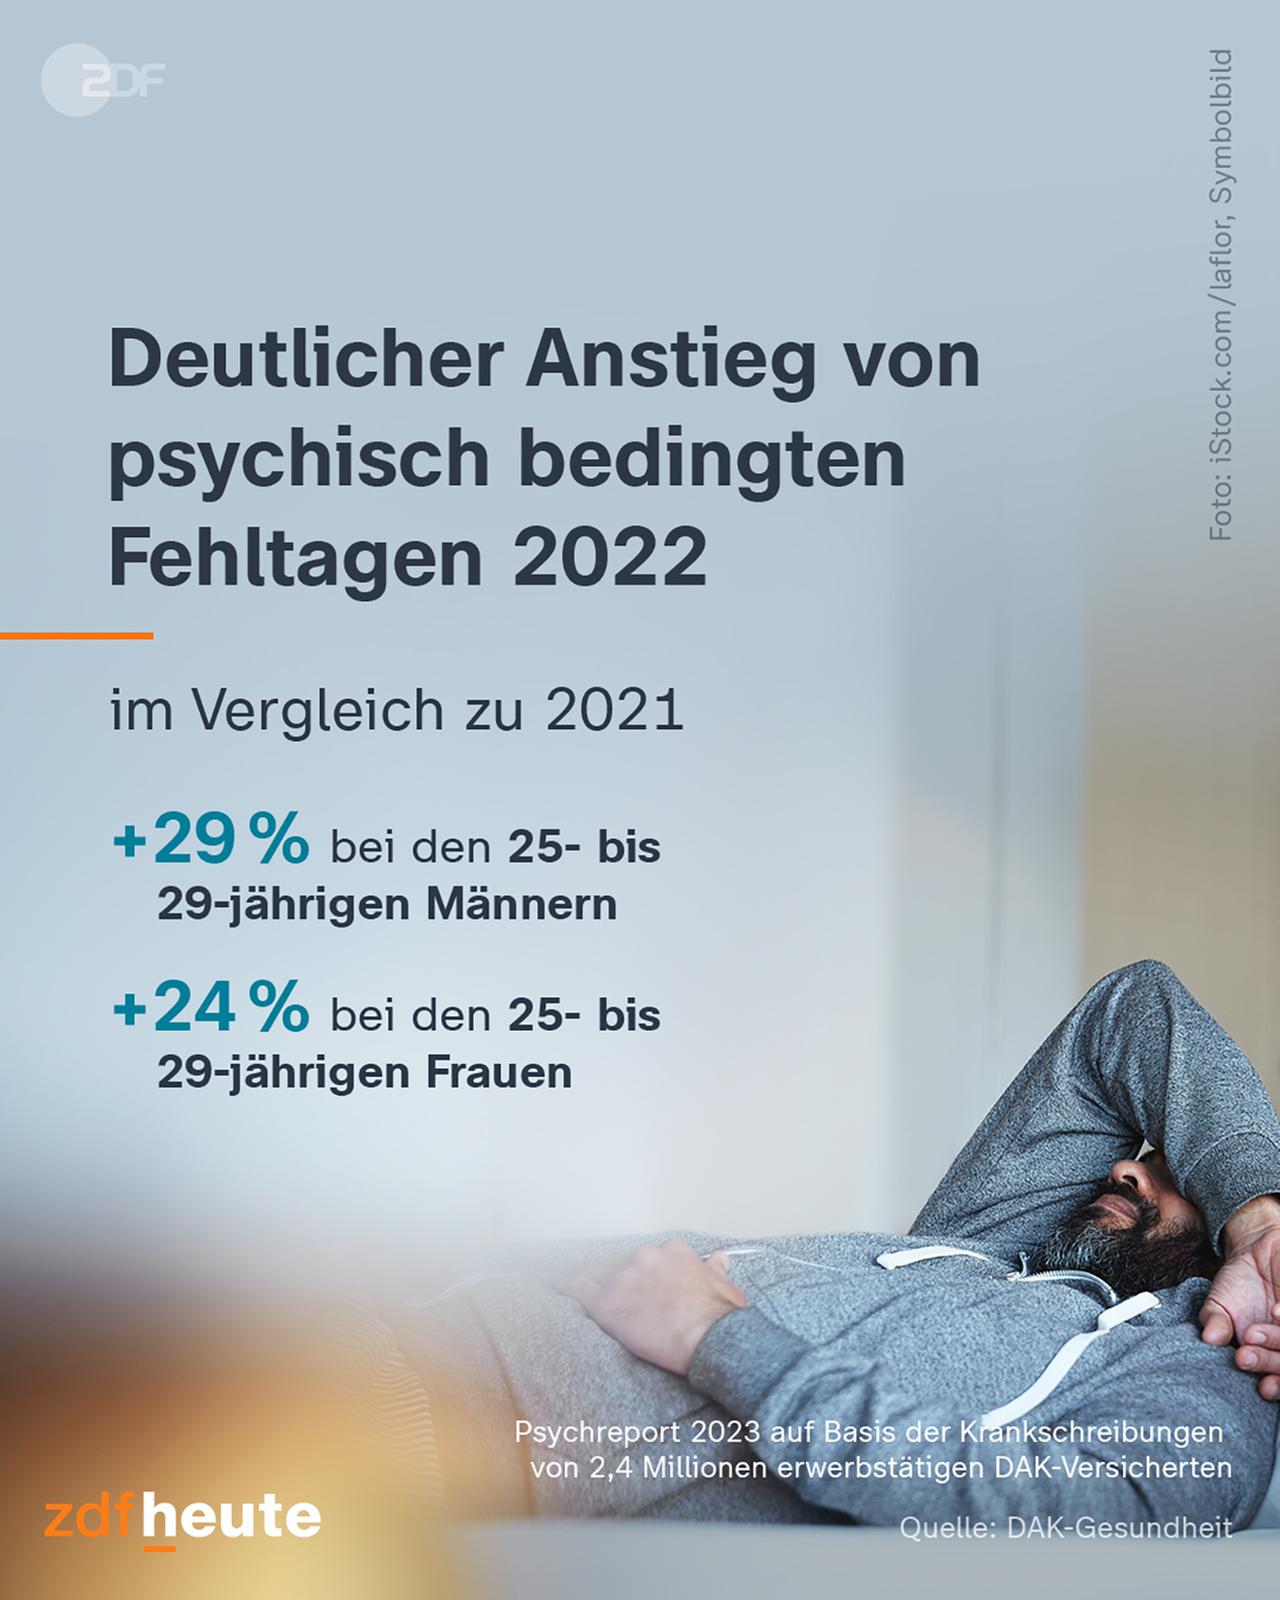 Infografik: Deutlicher Anstieg von psychisch bedingten Fehltagen 2022